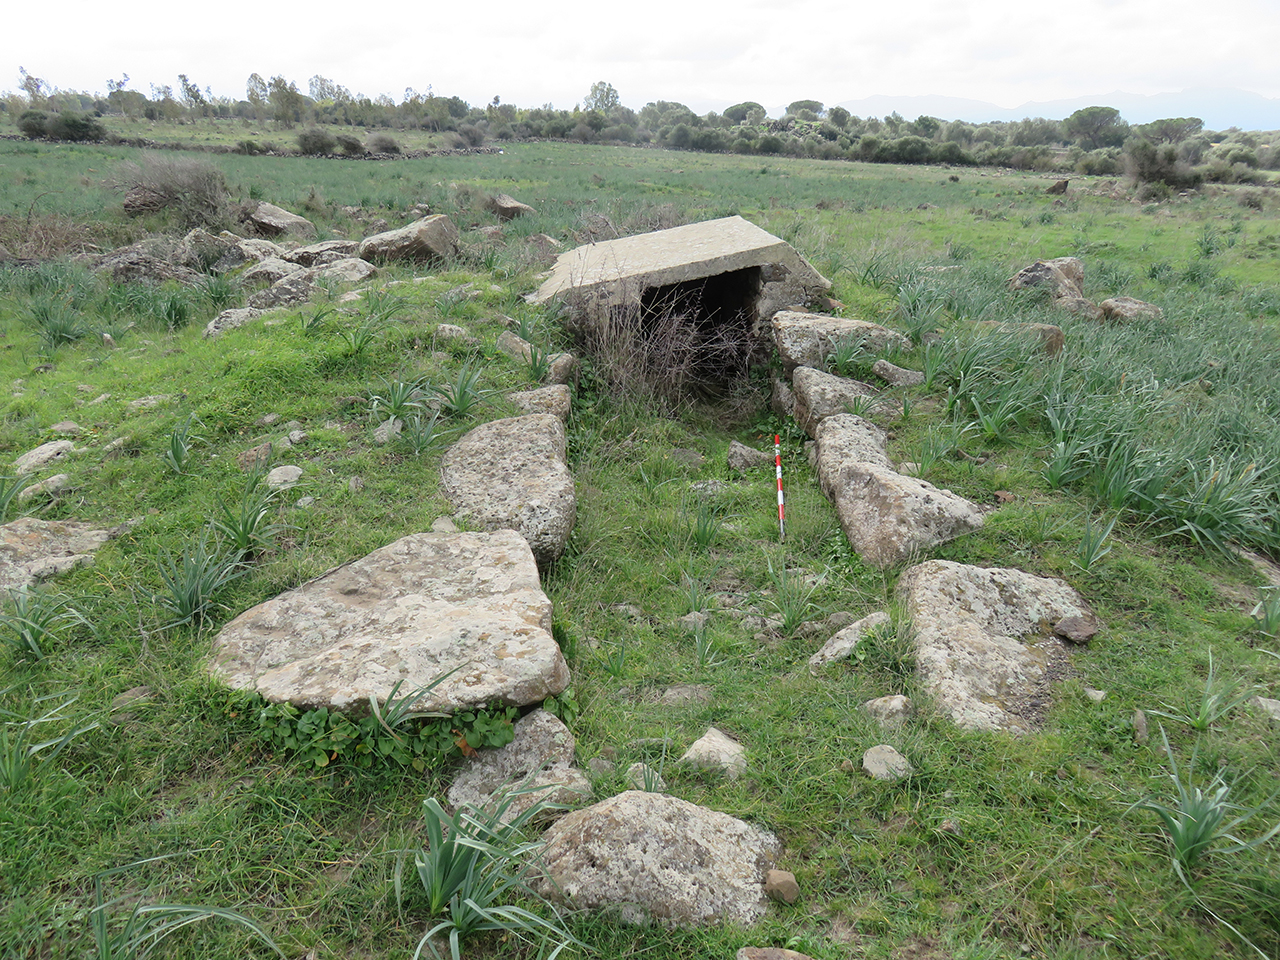 Tomba di giganti sa domu beccia (tomba di giganti, area ad uso funerario)